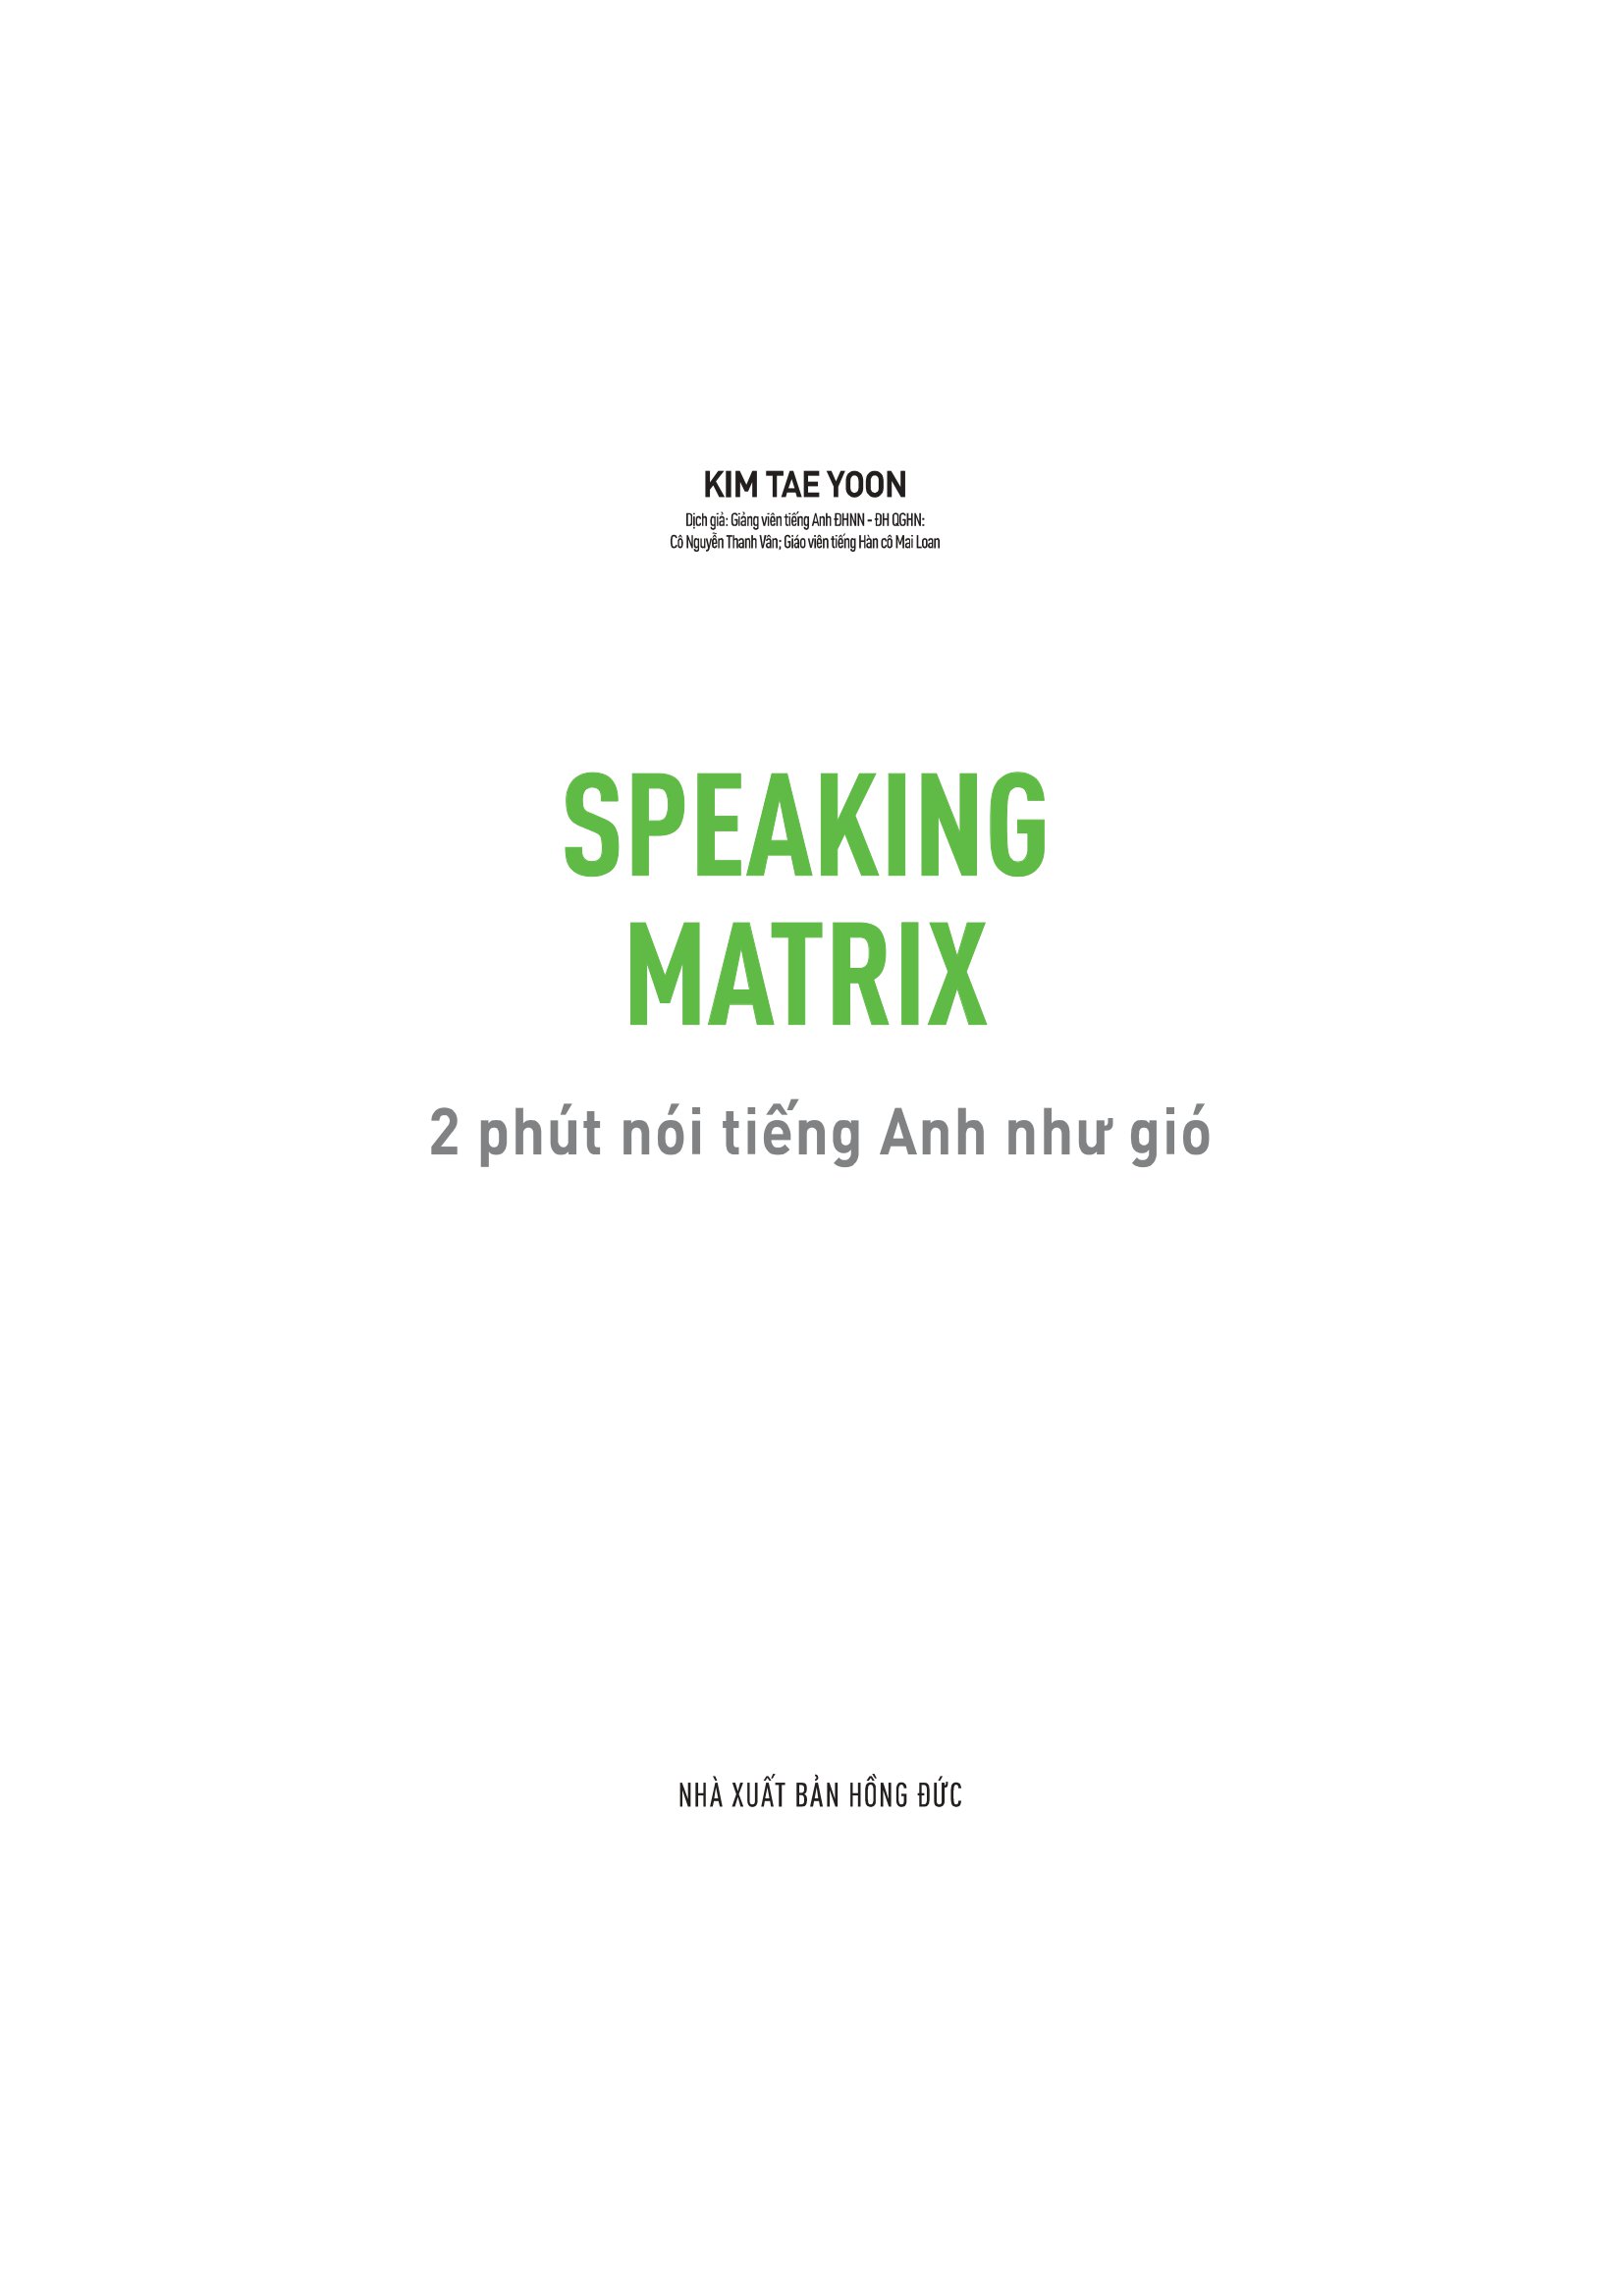 Speaking Matrix - 2 Phút Nói Tiếng Anh Như Gió PDF